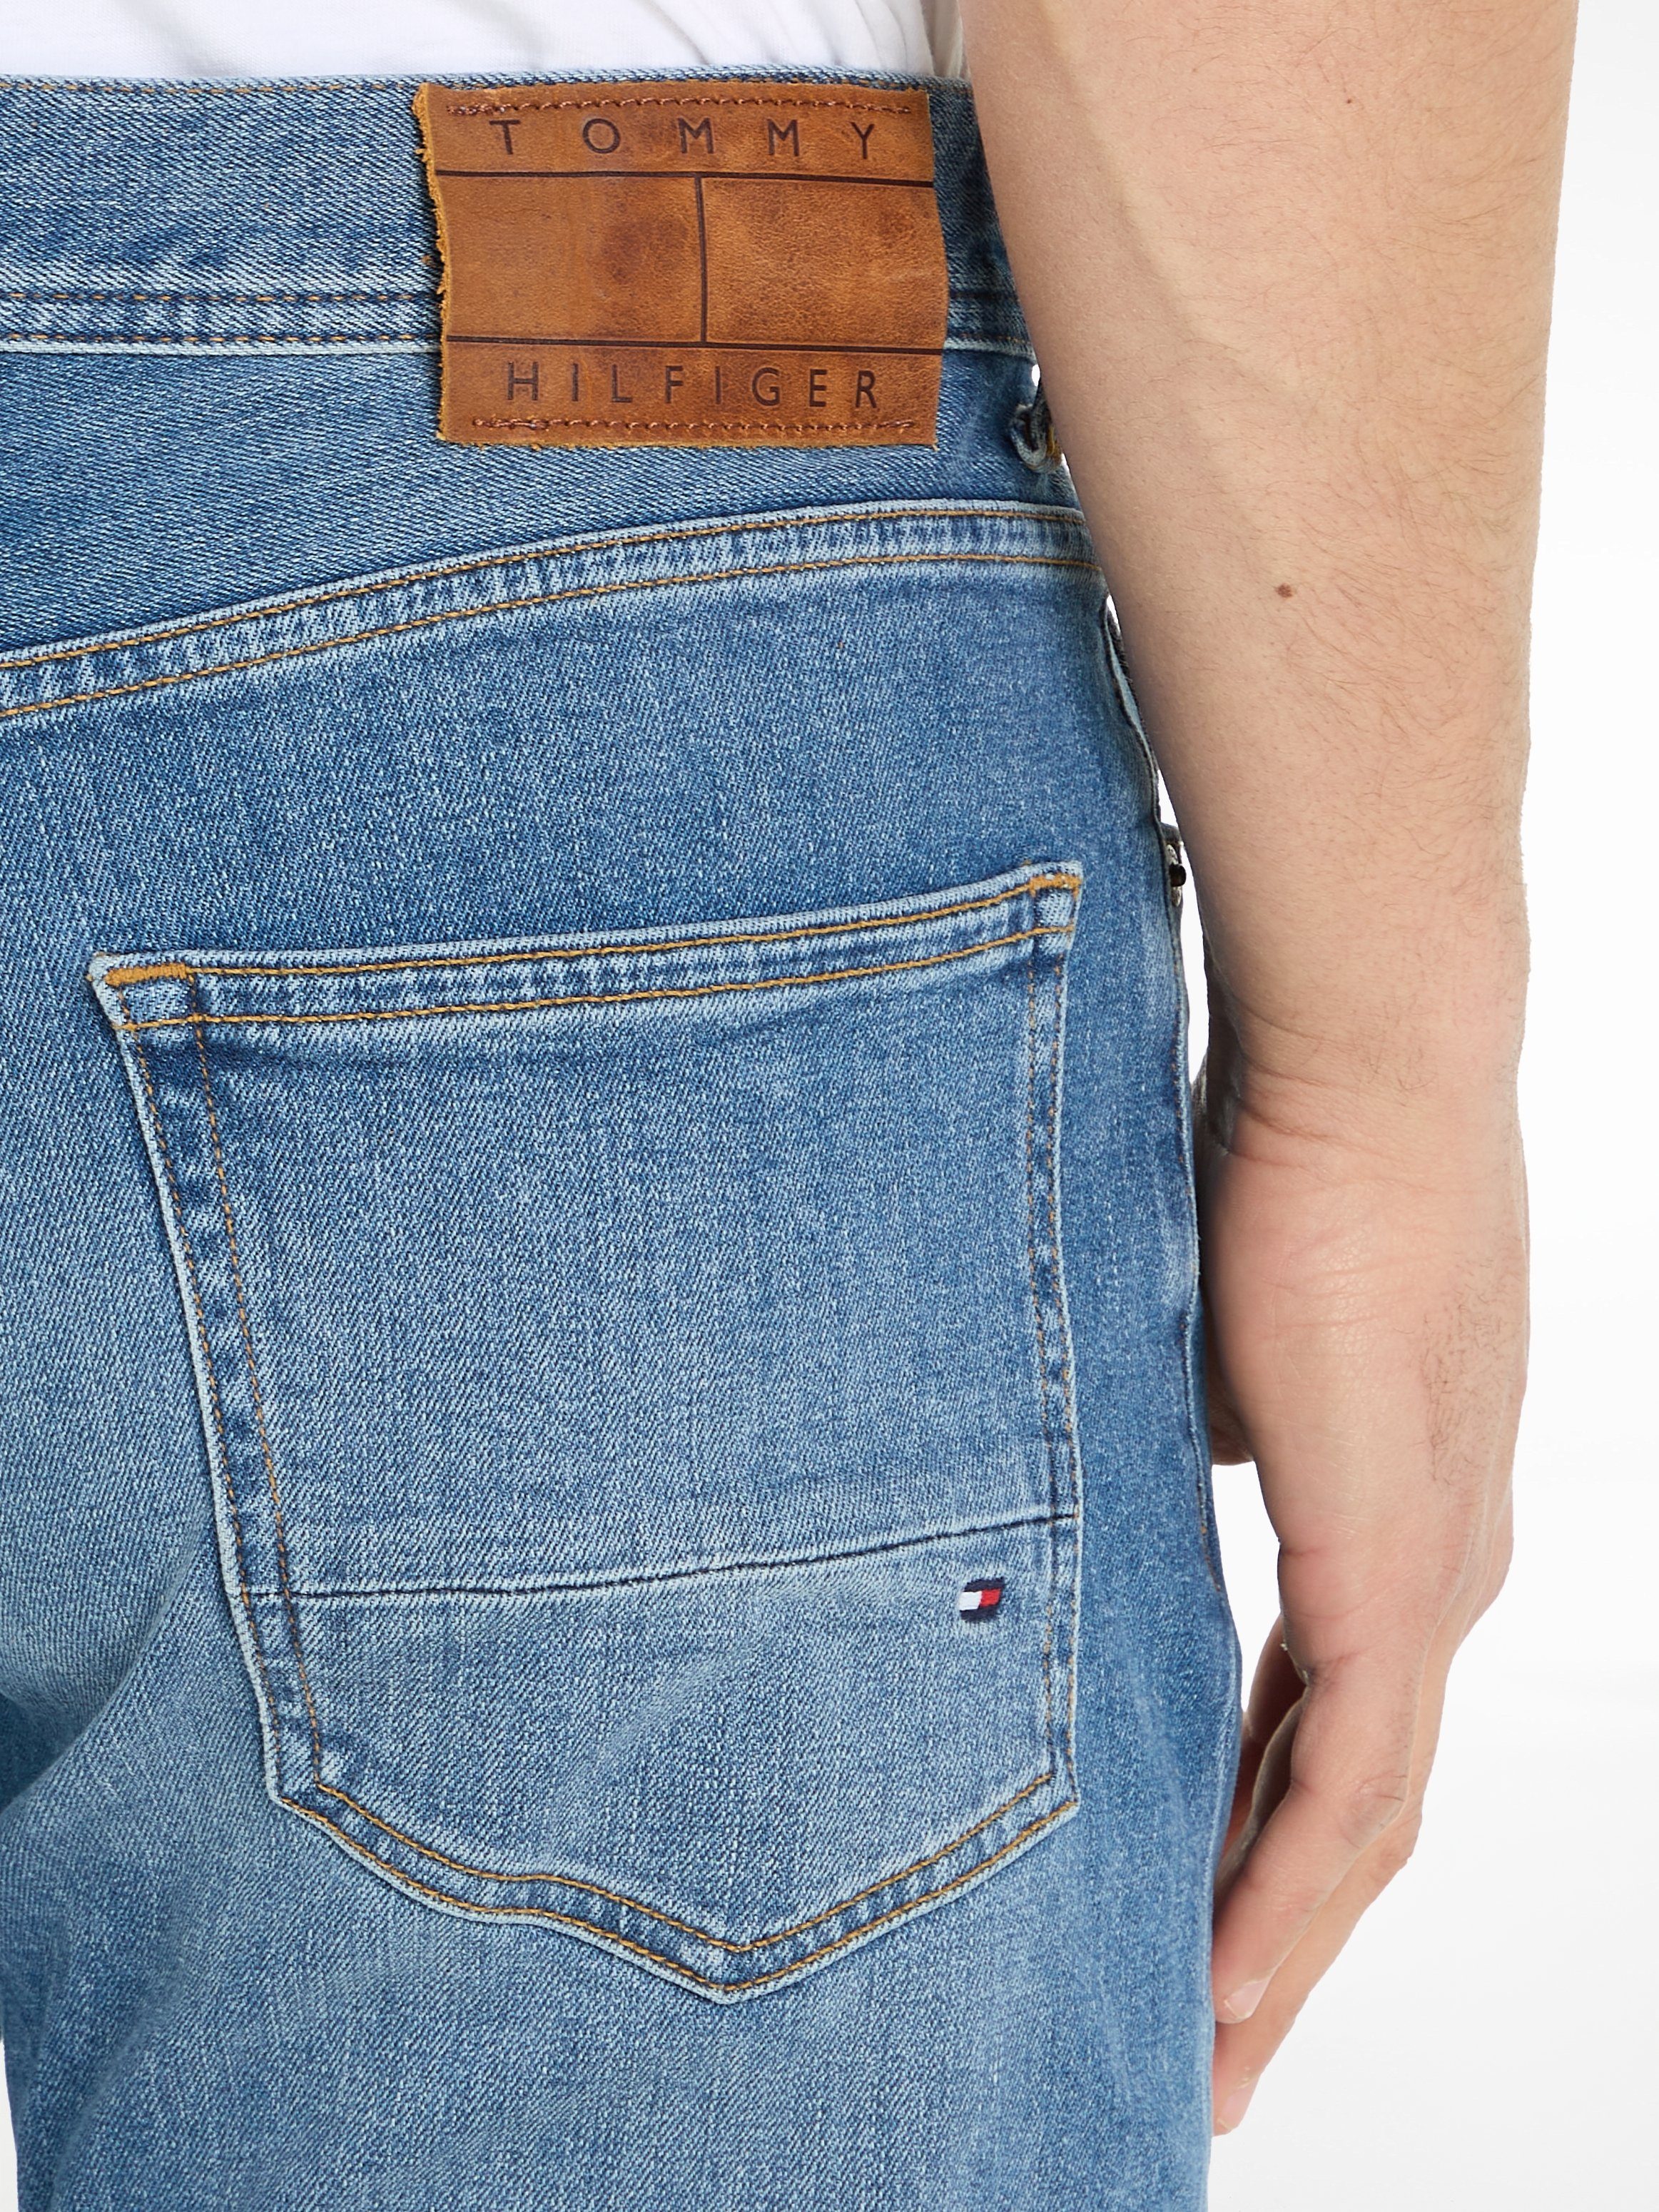 MERCER Jeans 5-Pocket-Jeans IND BRIDGER Hilfiger Boston STR Indigo Tommy REGULAR